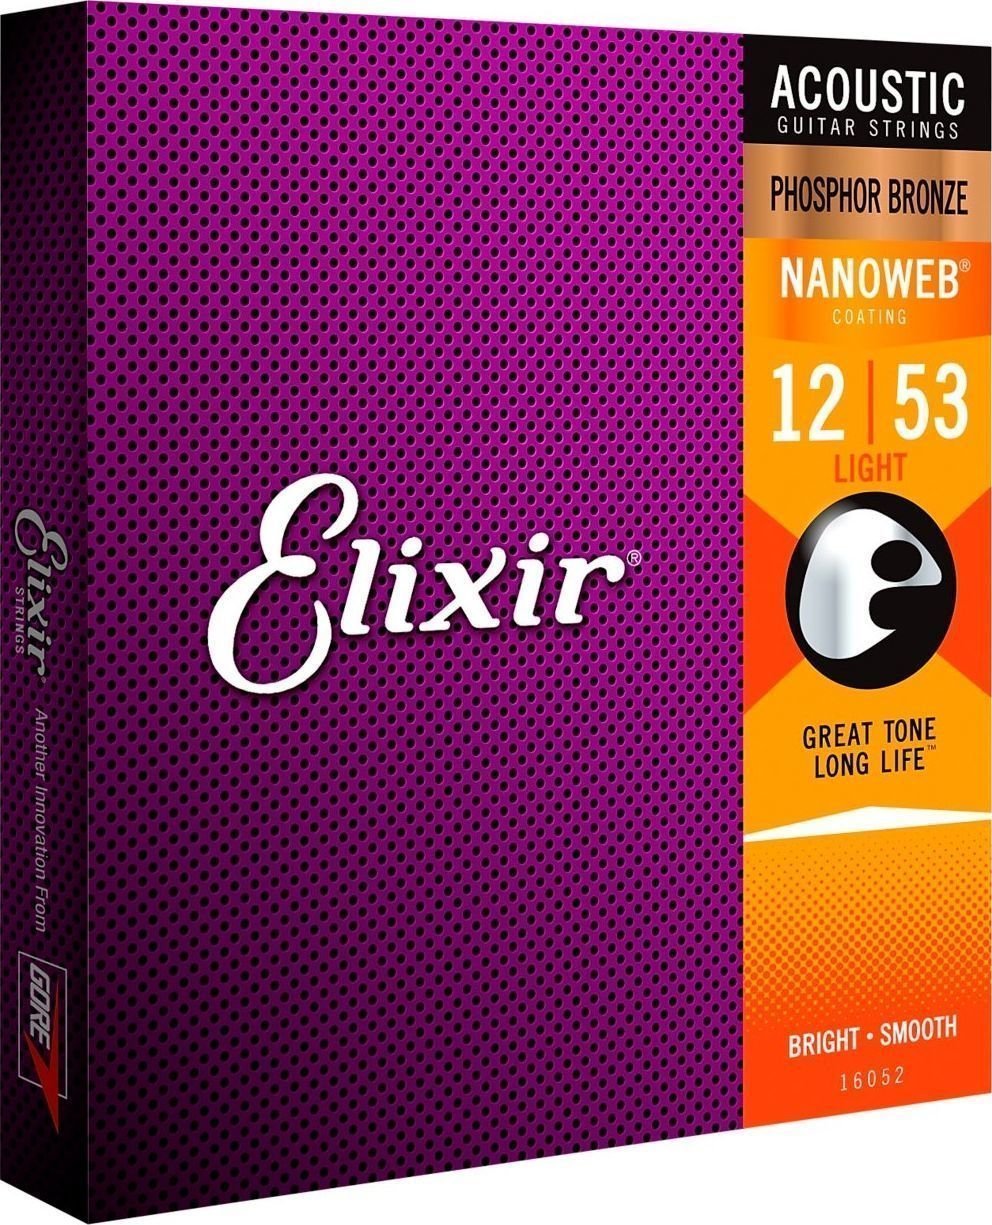 Struny do gitary akustycznej Elixir 16052 Nanoweb 12-53